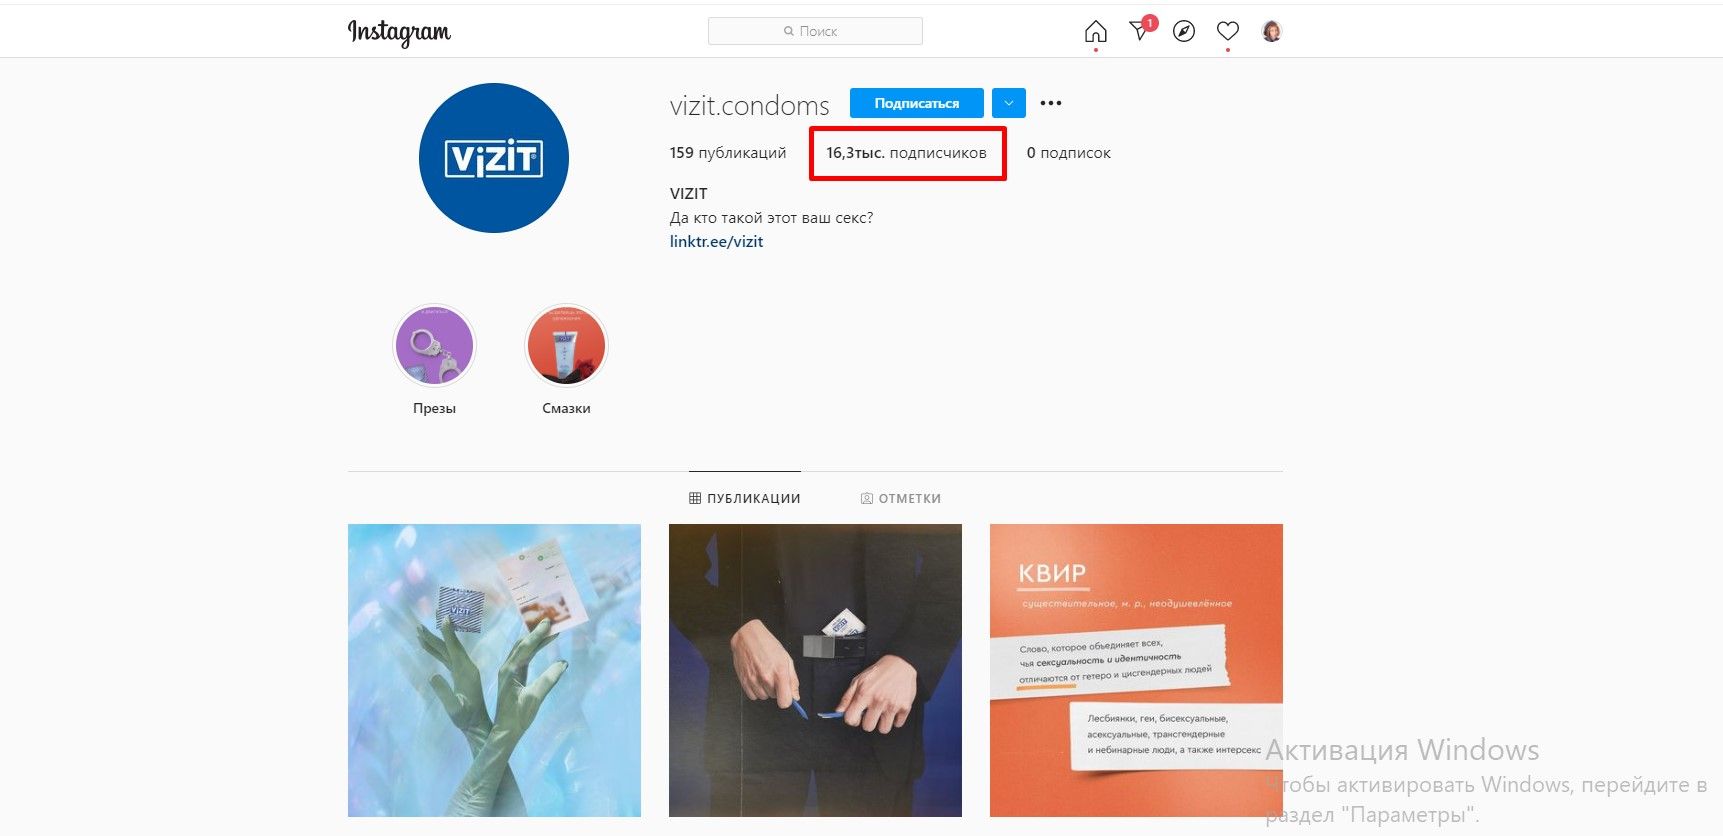 Тысячам подписчиков нравятся эмоции, которыми делится бренд «Визит»